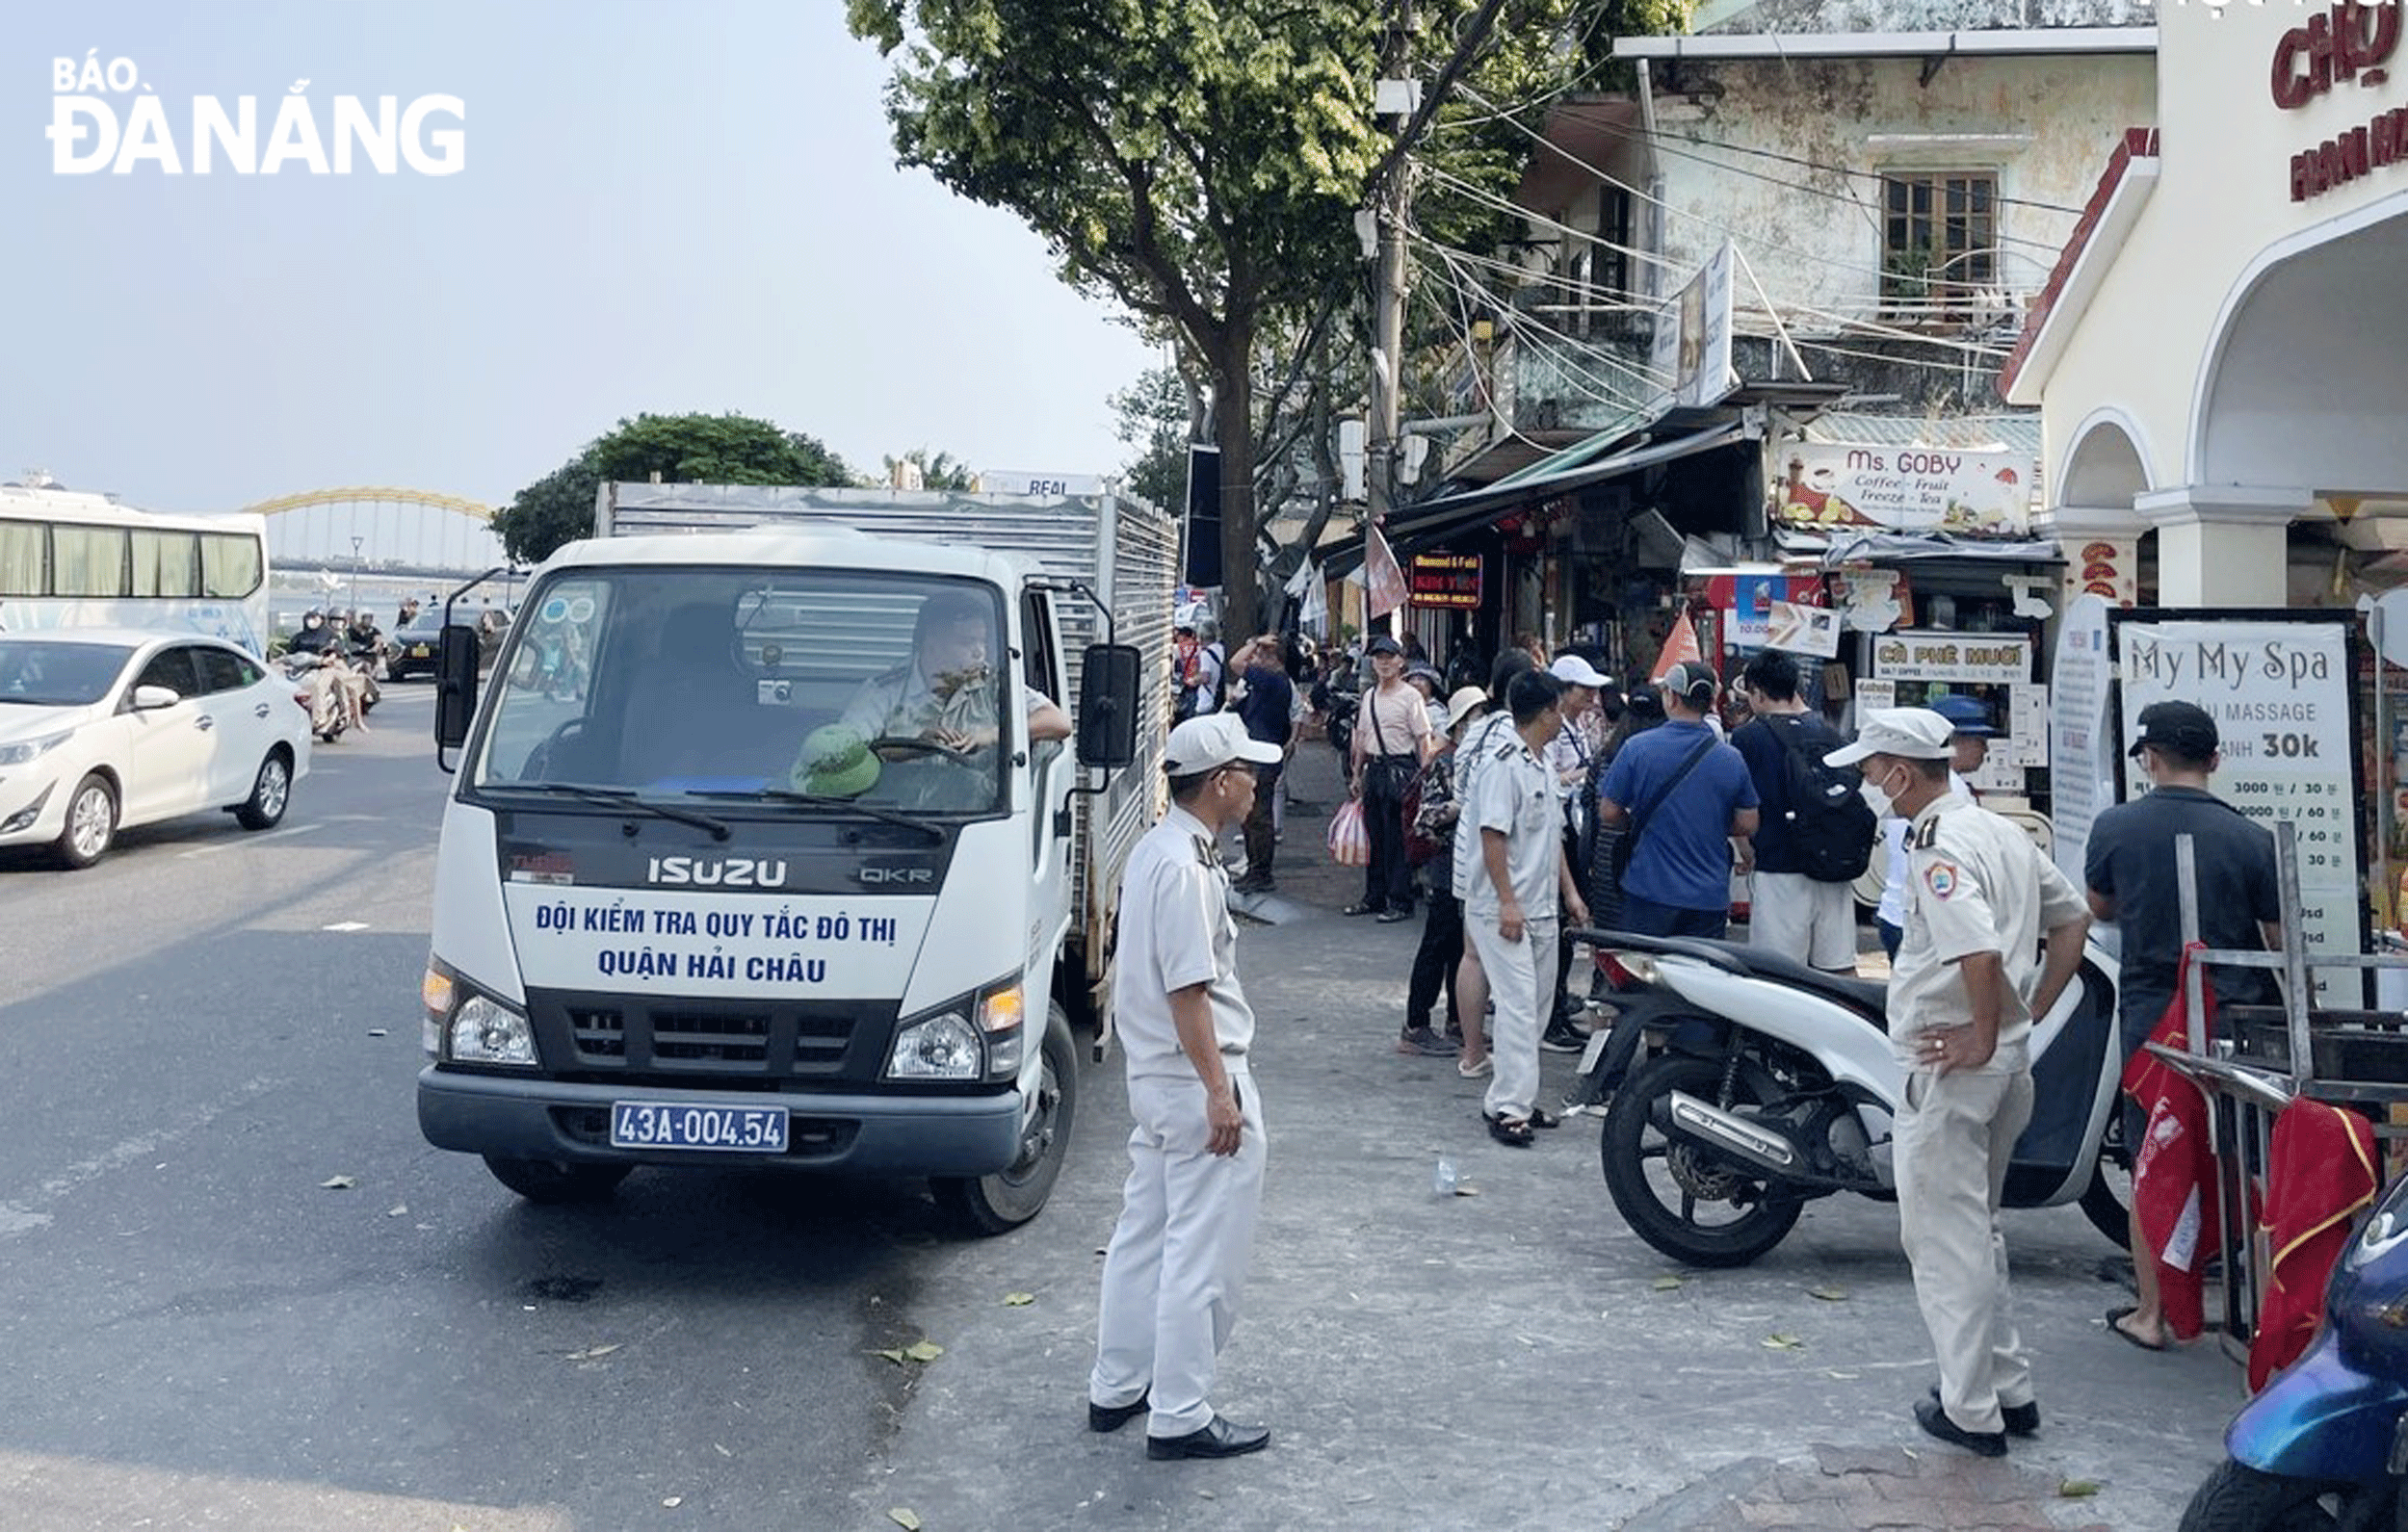 Lực lượng chức năng quận Hải Châu thường xuyên tuần tra, kiểm soát trật tự vỉa hè tại các khu vực thu hút đông đảo khách du lịch. Ảnh: TRẦN TRÚC